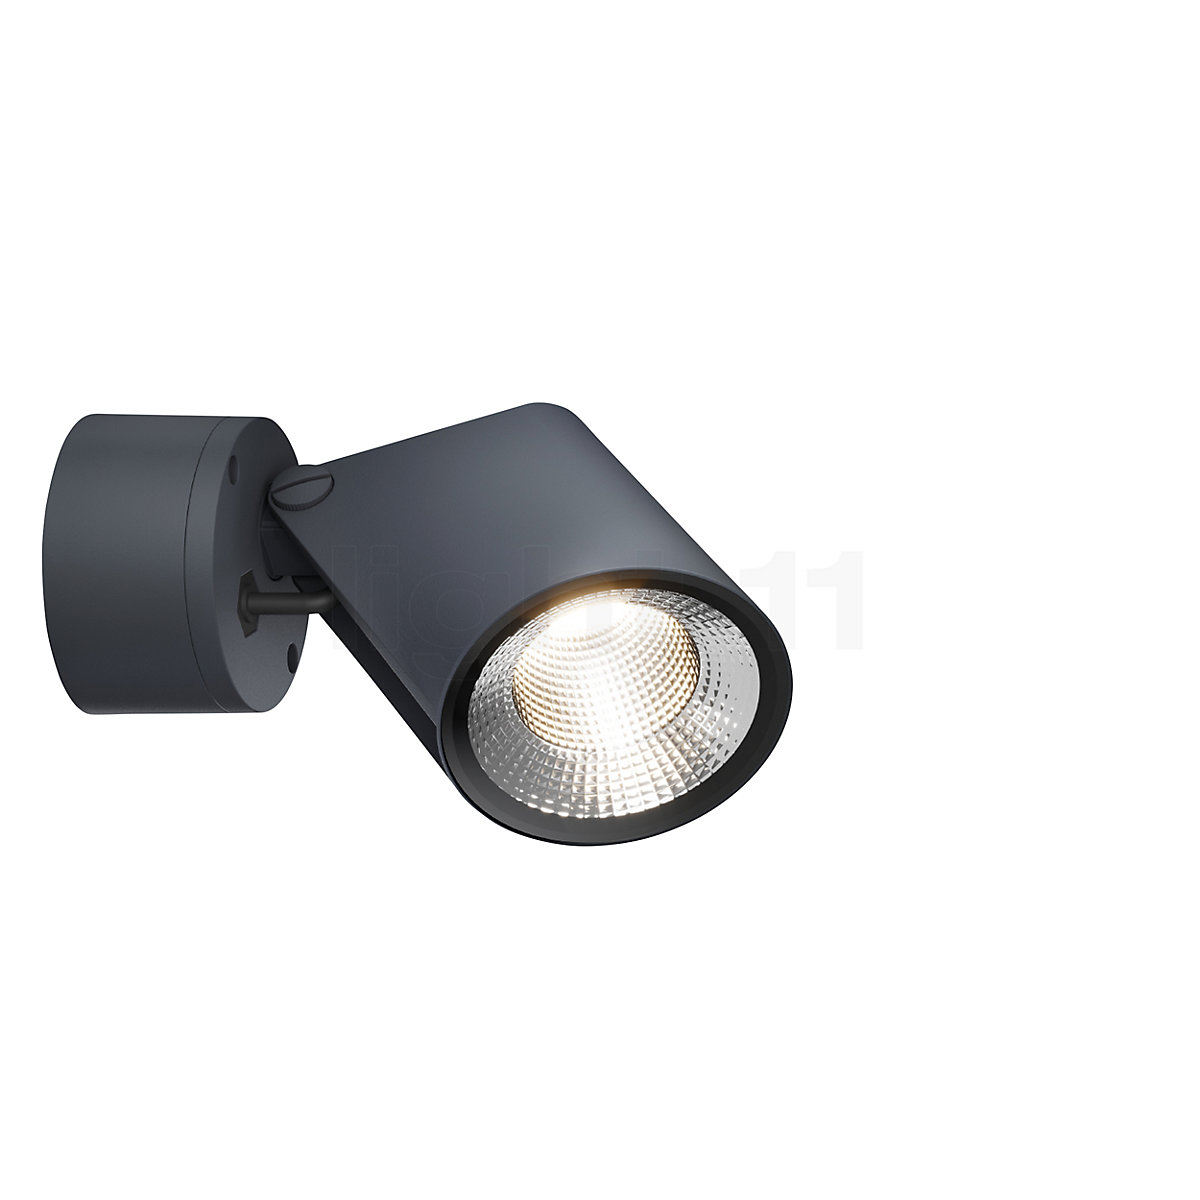 Overeenkomstig met knop gloeilamp Buy IP44.de Stic Wall-/Ceiling Light LED at light11.eu